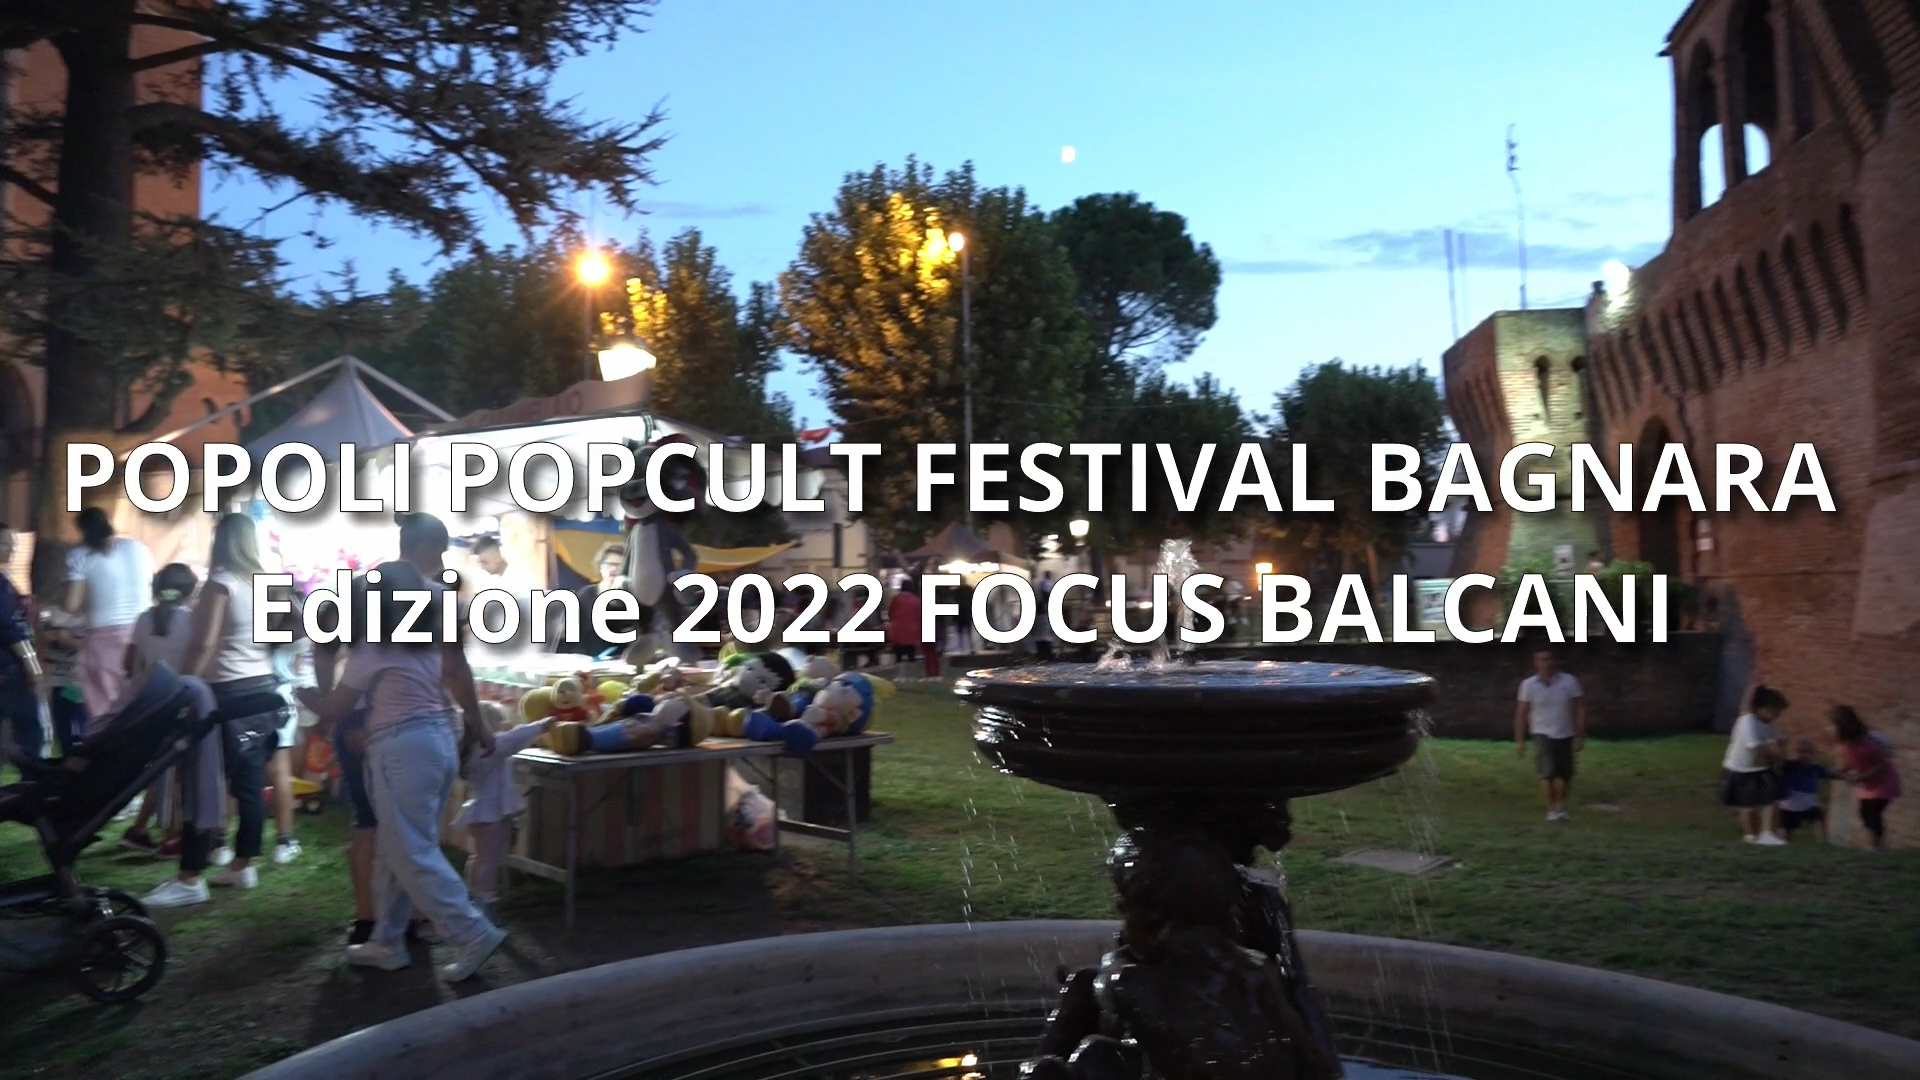 Popoli Popcult Festival Bagnara Edizione 2022: Focus Balcani